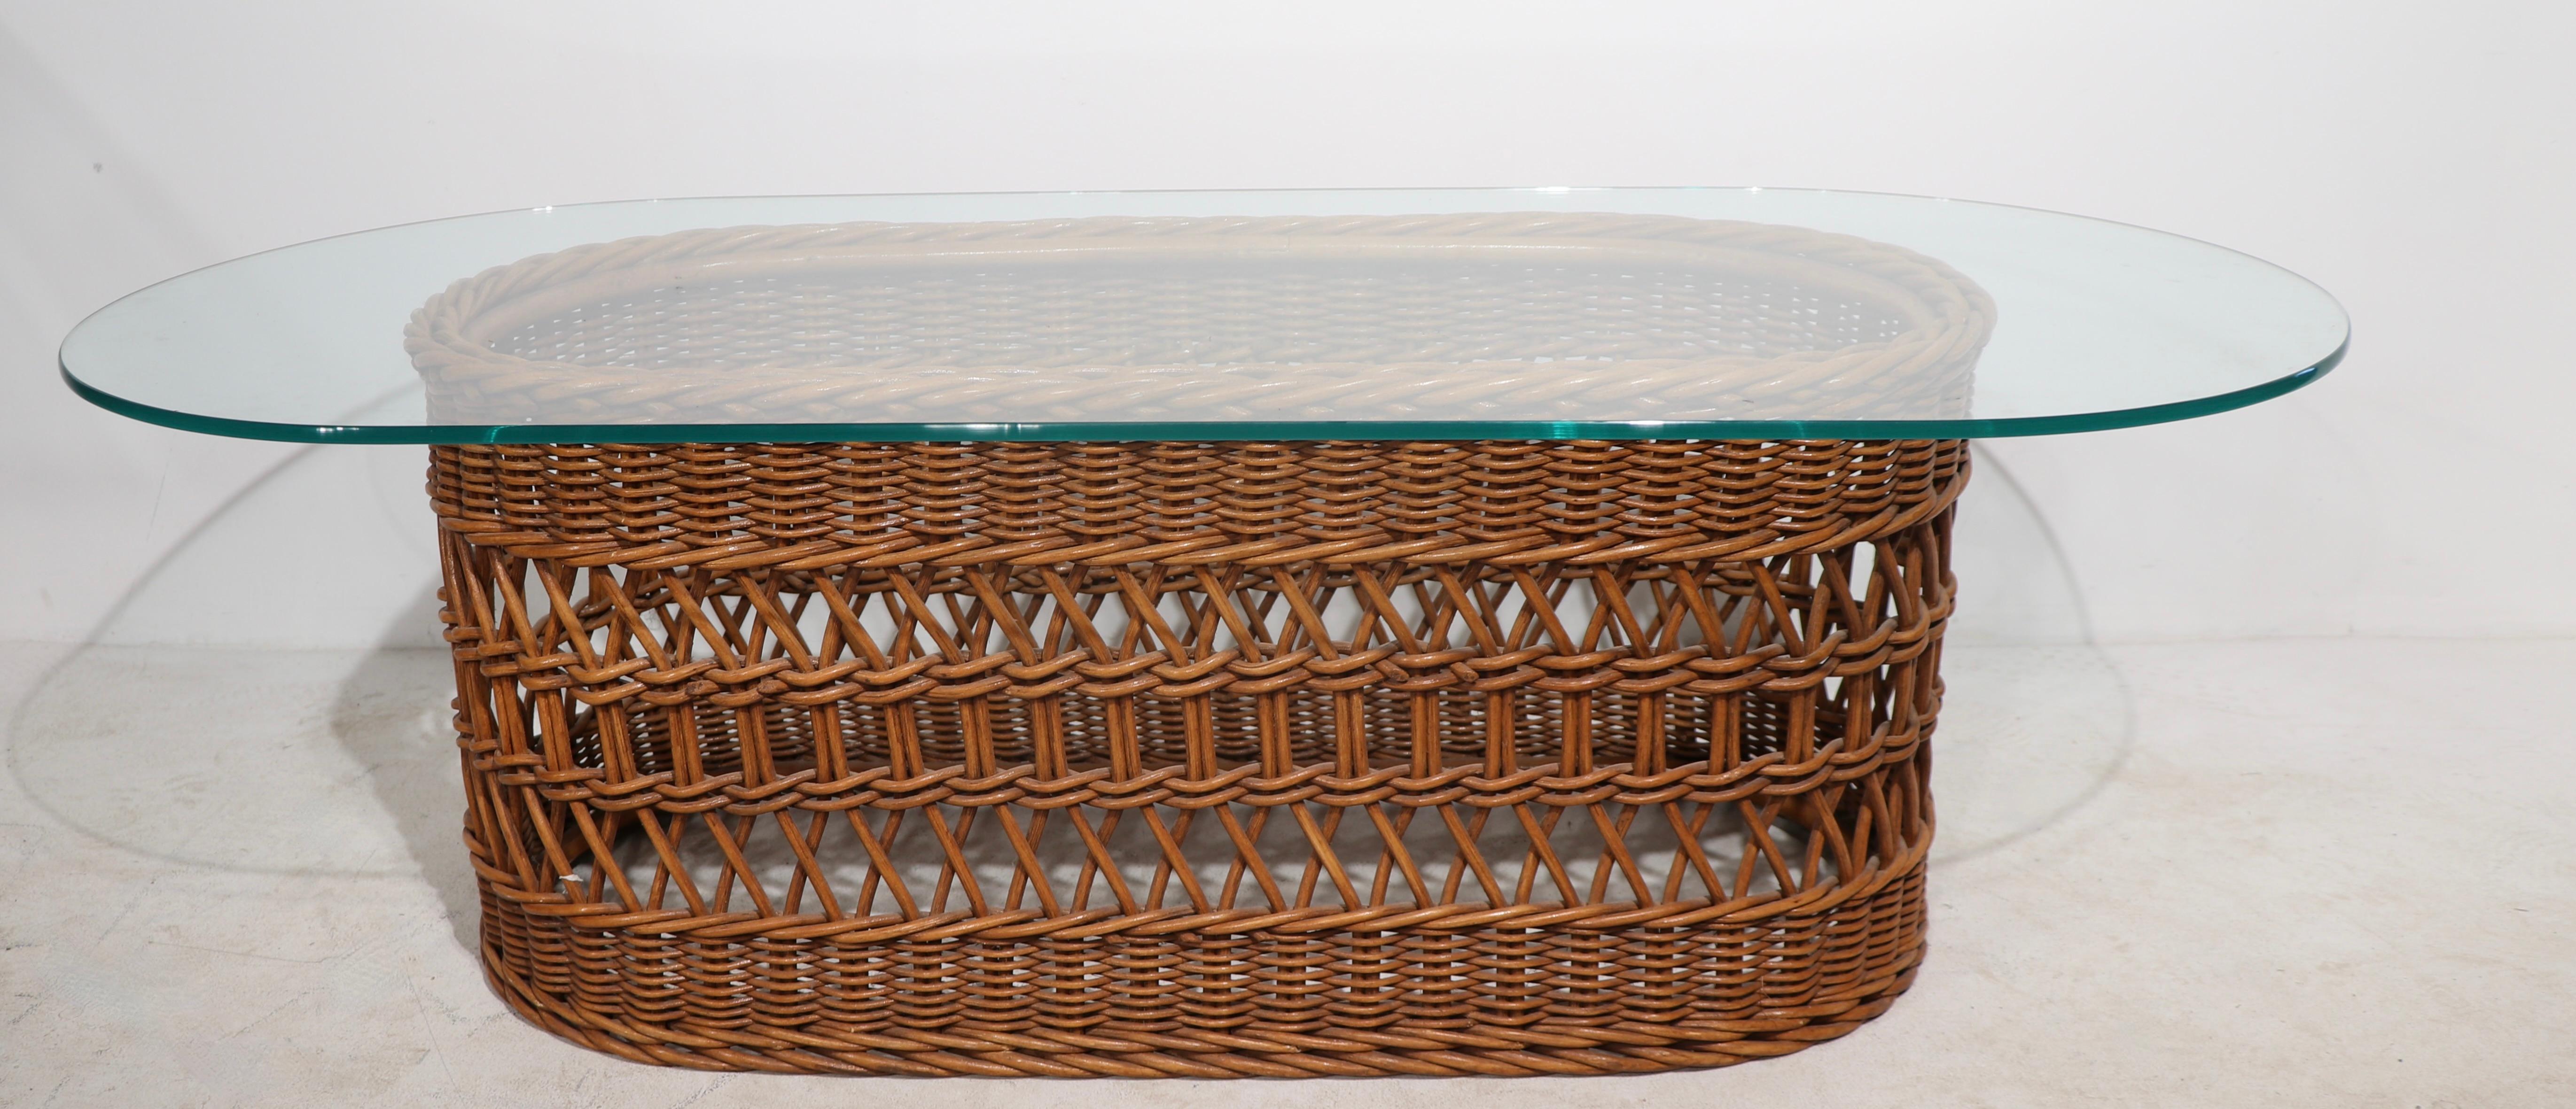 Chic Couchtisch aus gewebtem Korbgeflecht und Glas in sehr gutem, originalem Zustand, sauber und einsatzbereit. Die ovale Glasplatte ( 54 B x 24 T in. ) ruht auf einem ovalen Korbsockel ( 37,5 B x 17 T in. ).